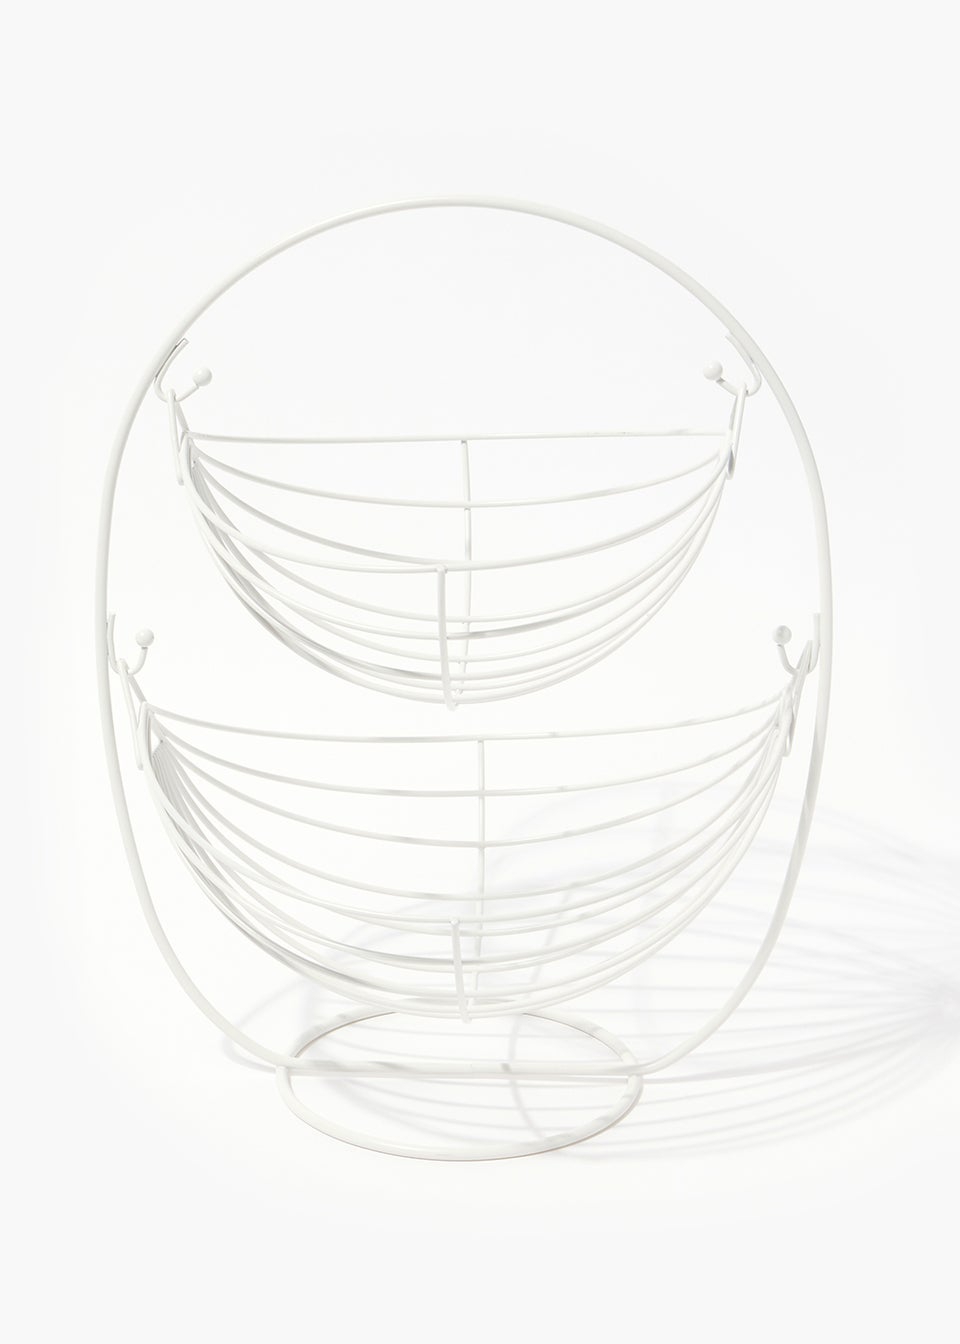 White Wire Two Tier Fruit Basket (40cm x 30cm x 25cm)